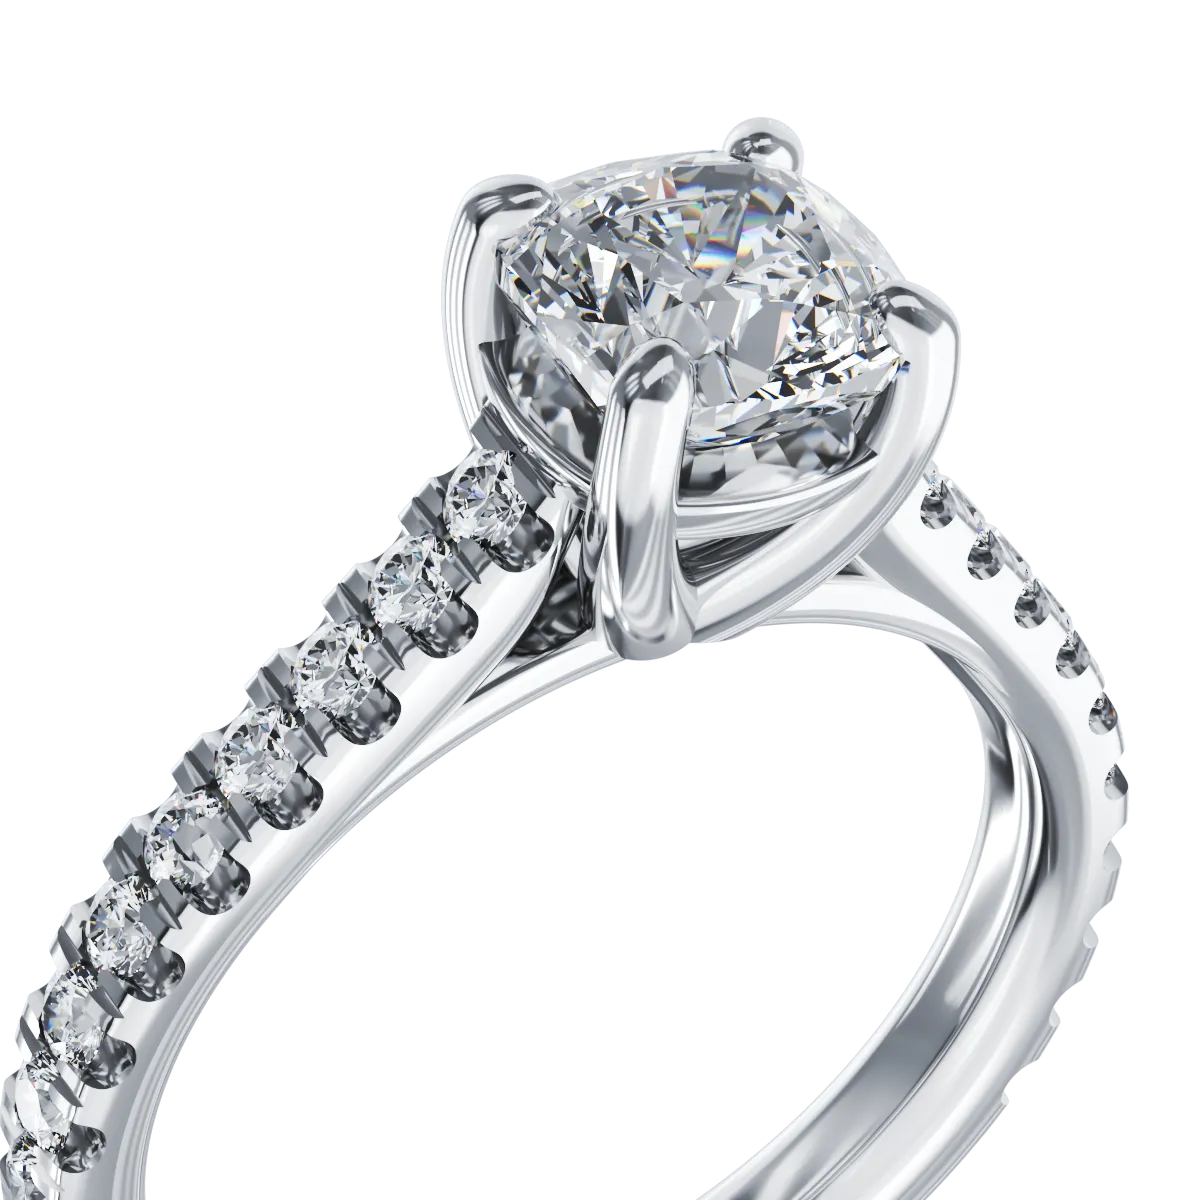 Годежен пръстен от бяло злато 18K с диамант 1.2гкт u диаманти 0.375гкт